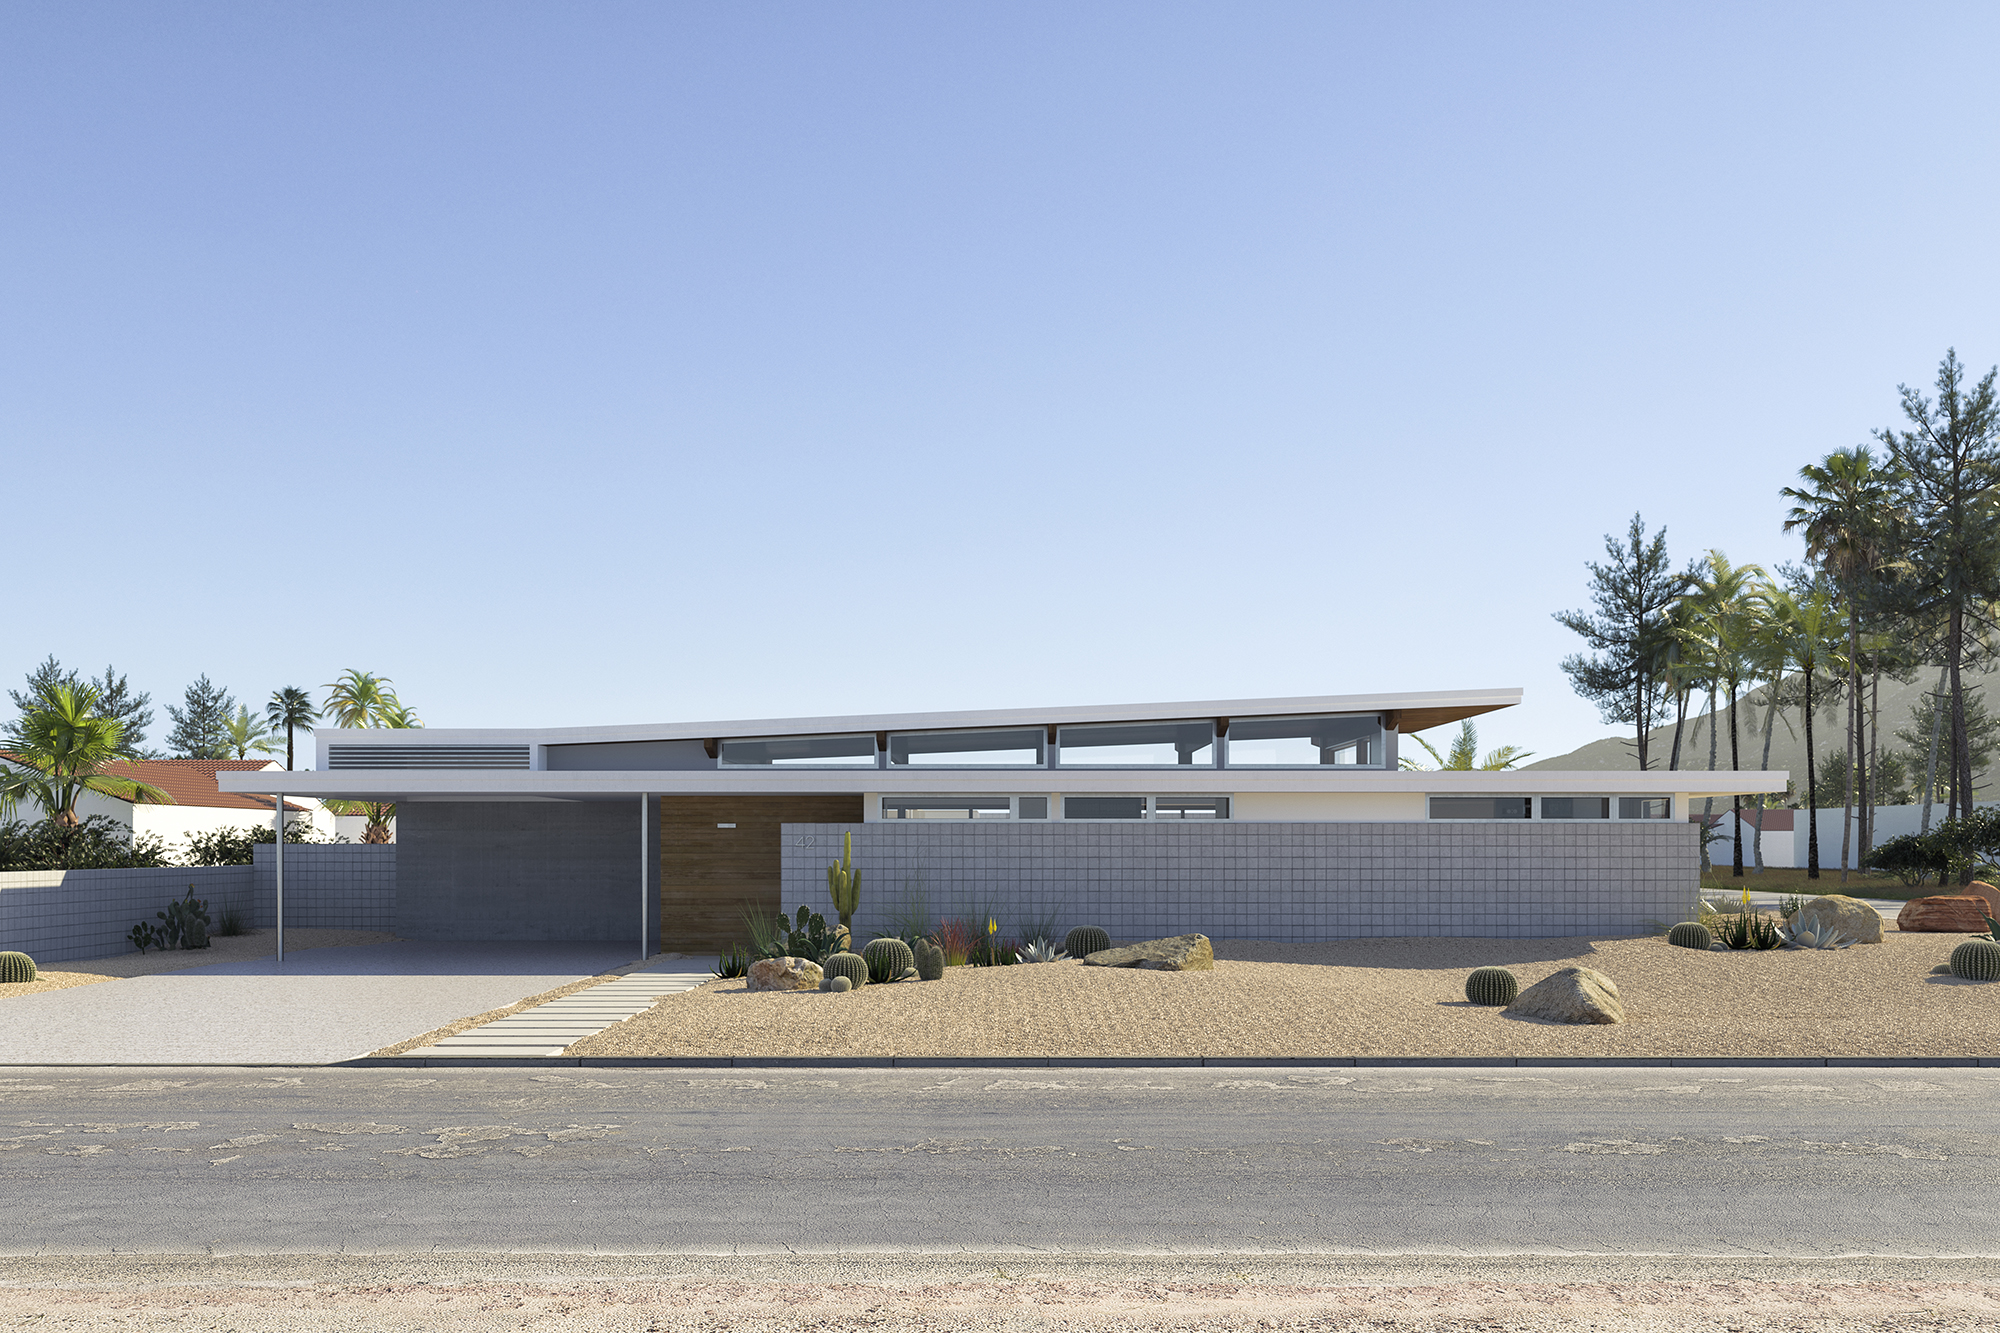 Single-story modern house in the desert